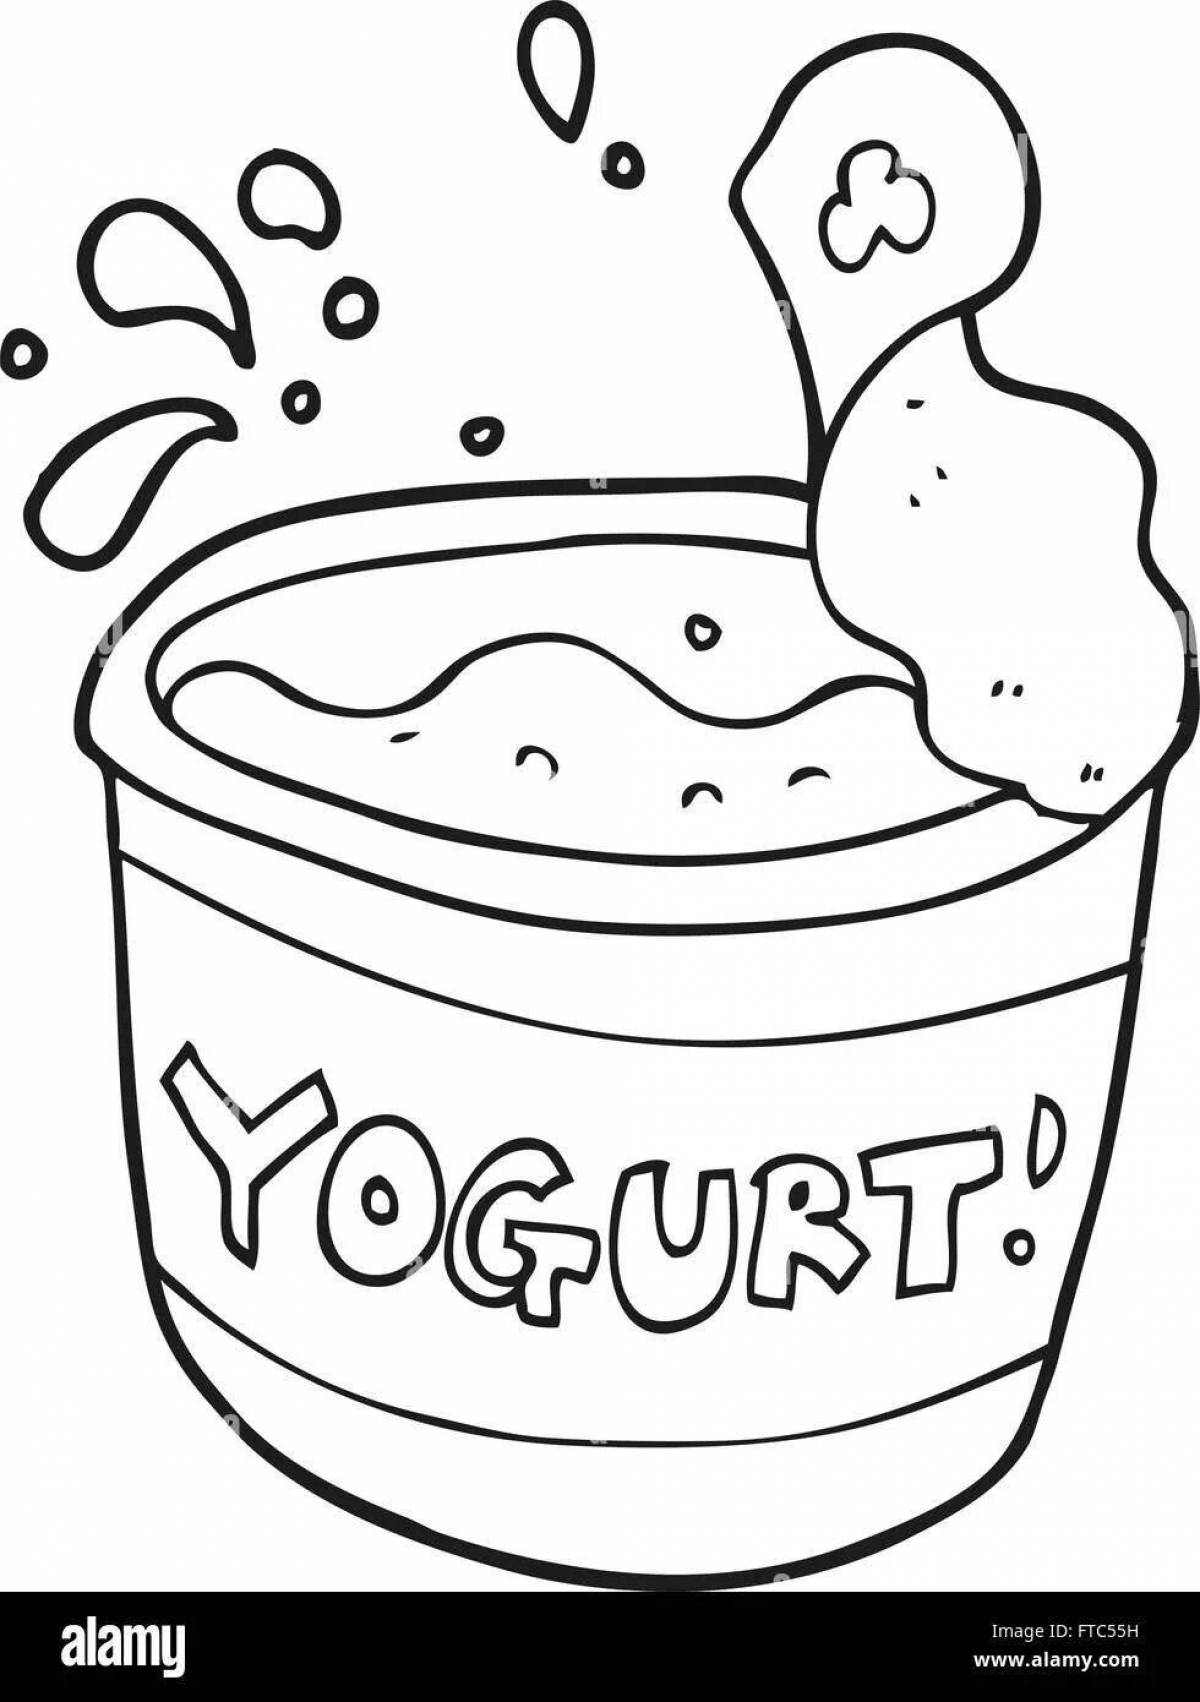 Увлекательная раскраска йогурта для детей